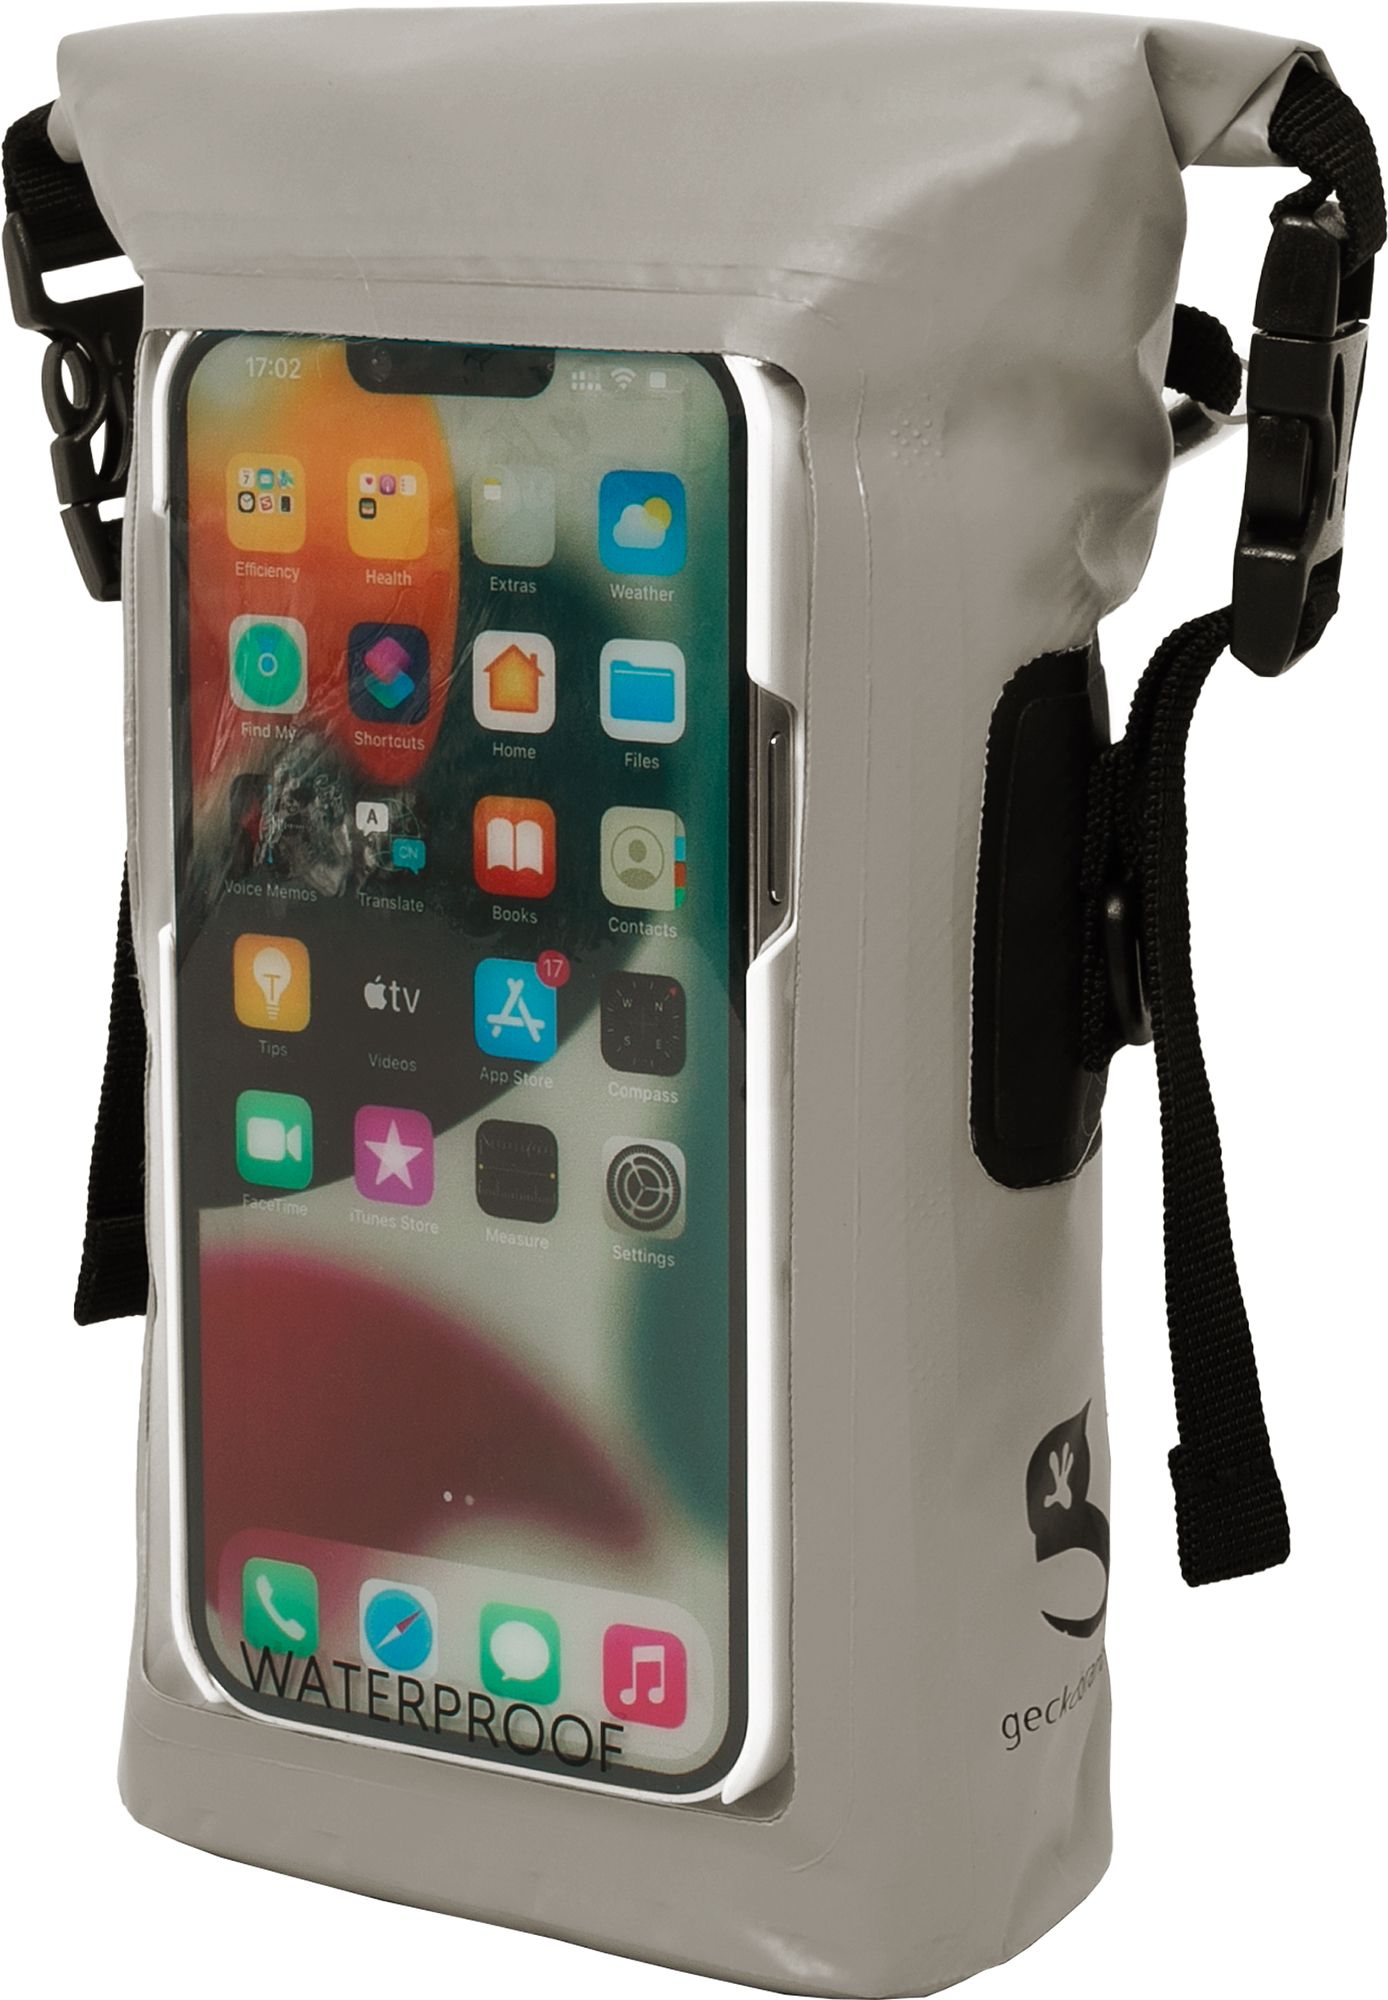 geckobrands Waterproof Phone Tote